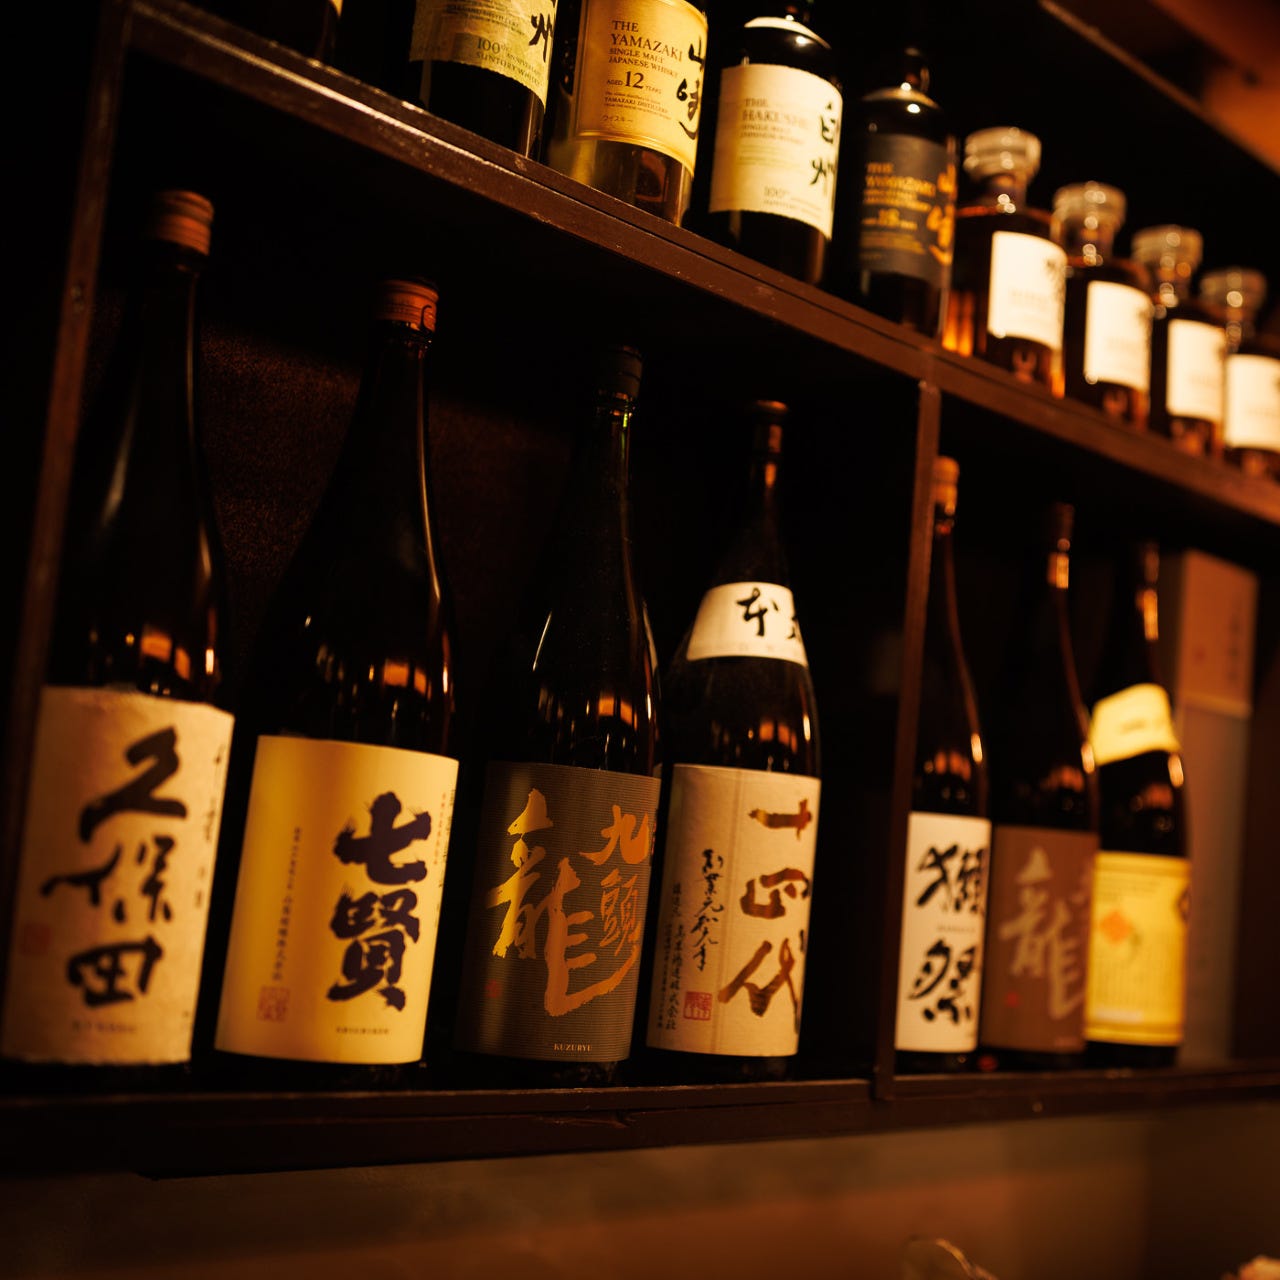 久保田・真澄・黒竜・而今・獺祭など日本中のお酒が揃ってます！